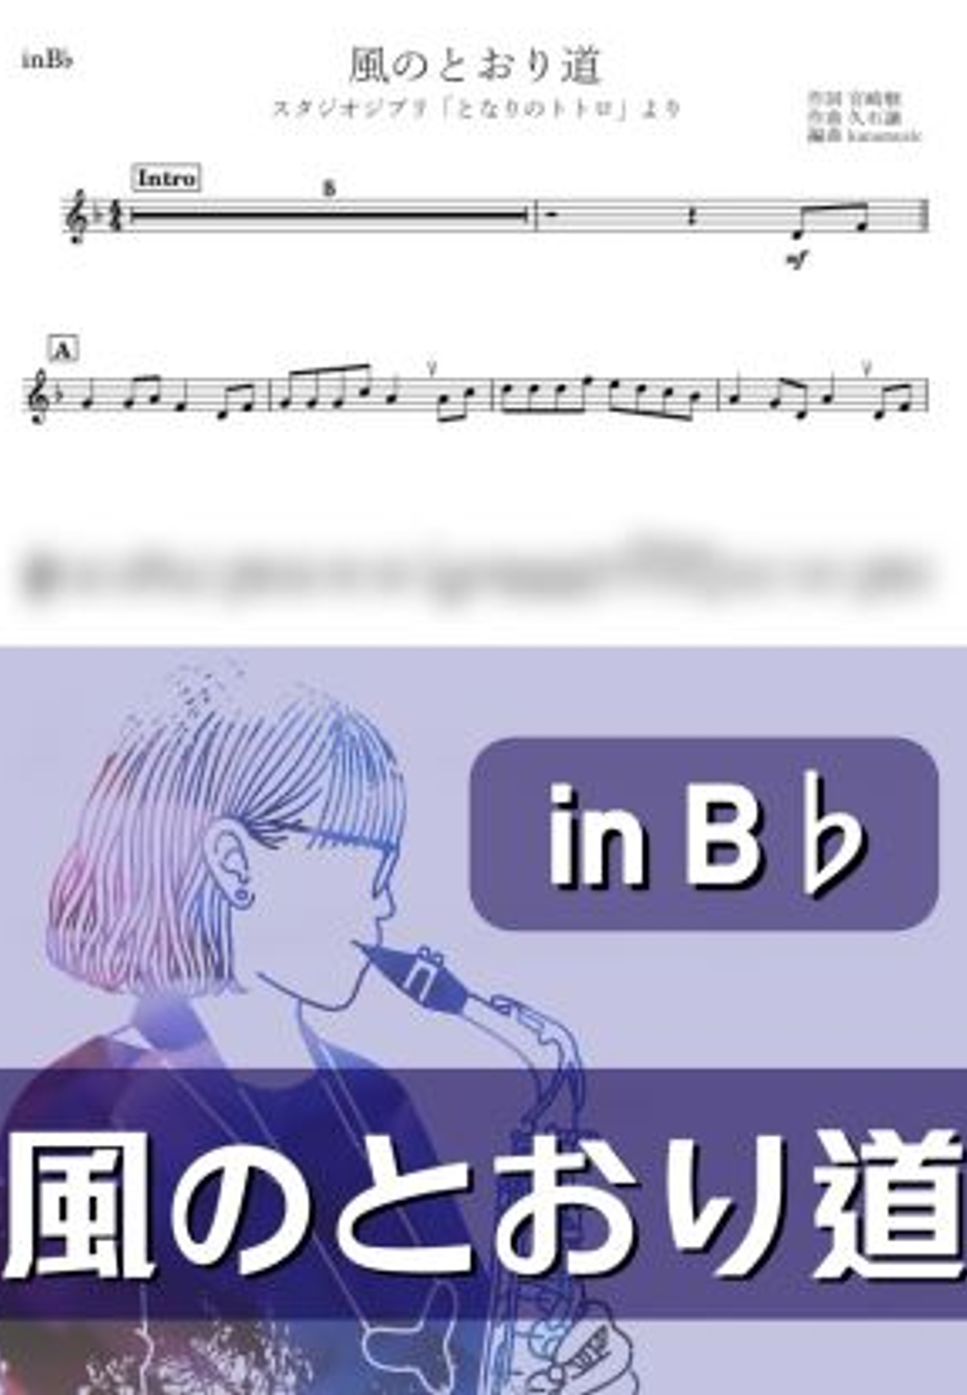 となりのトトロ - 風のとおり道 (B♭) by kanamusic